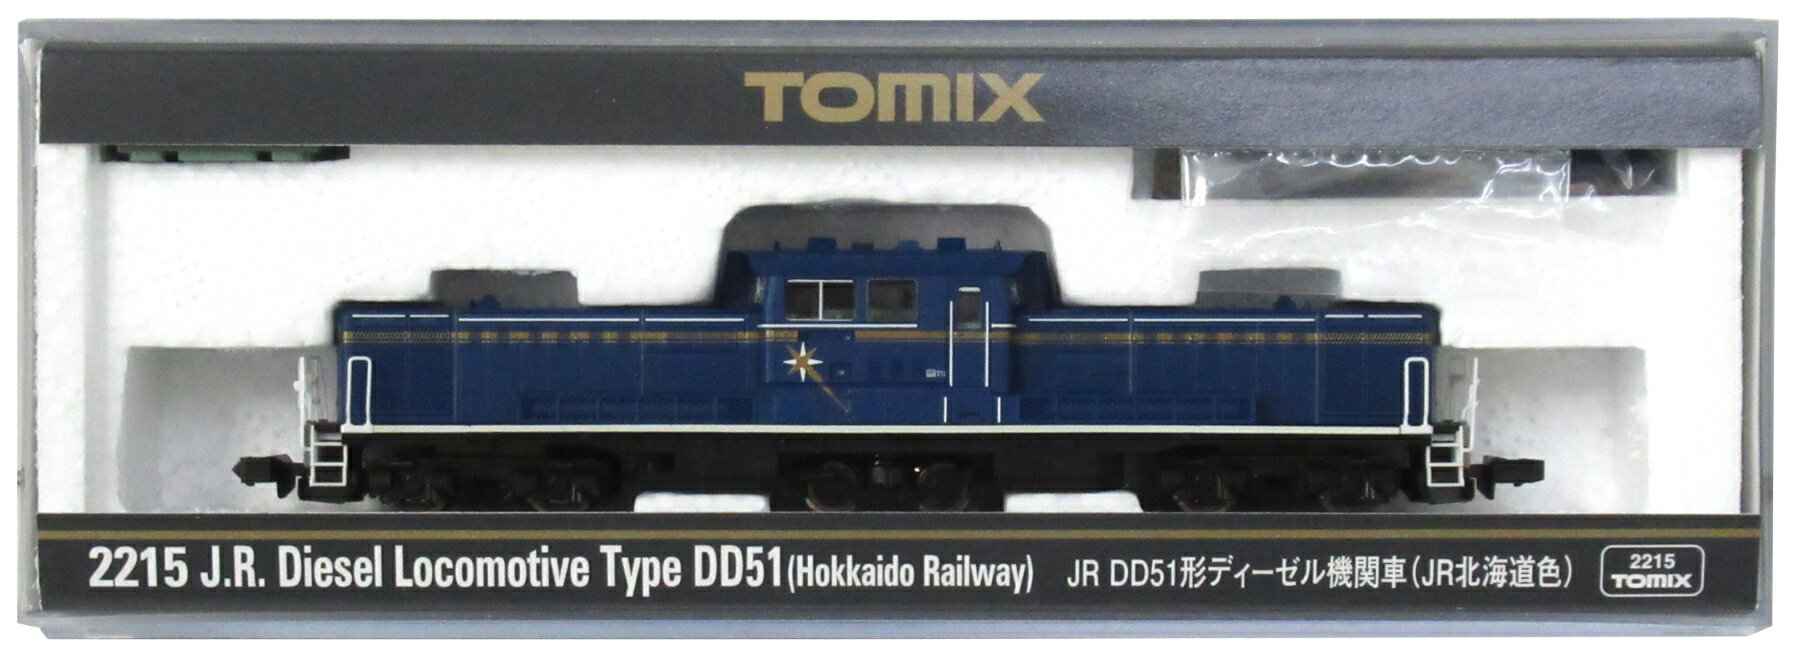 【中古】Nゲージ TOMIX(トミックス) 2215 JR DD51形 ディーゼル機関車 (JR北海道色) 2009年ロット 【A】